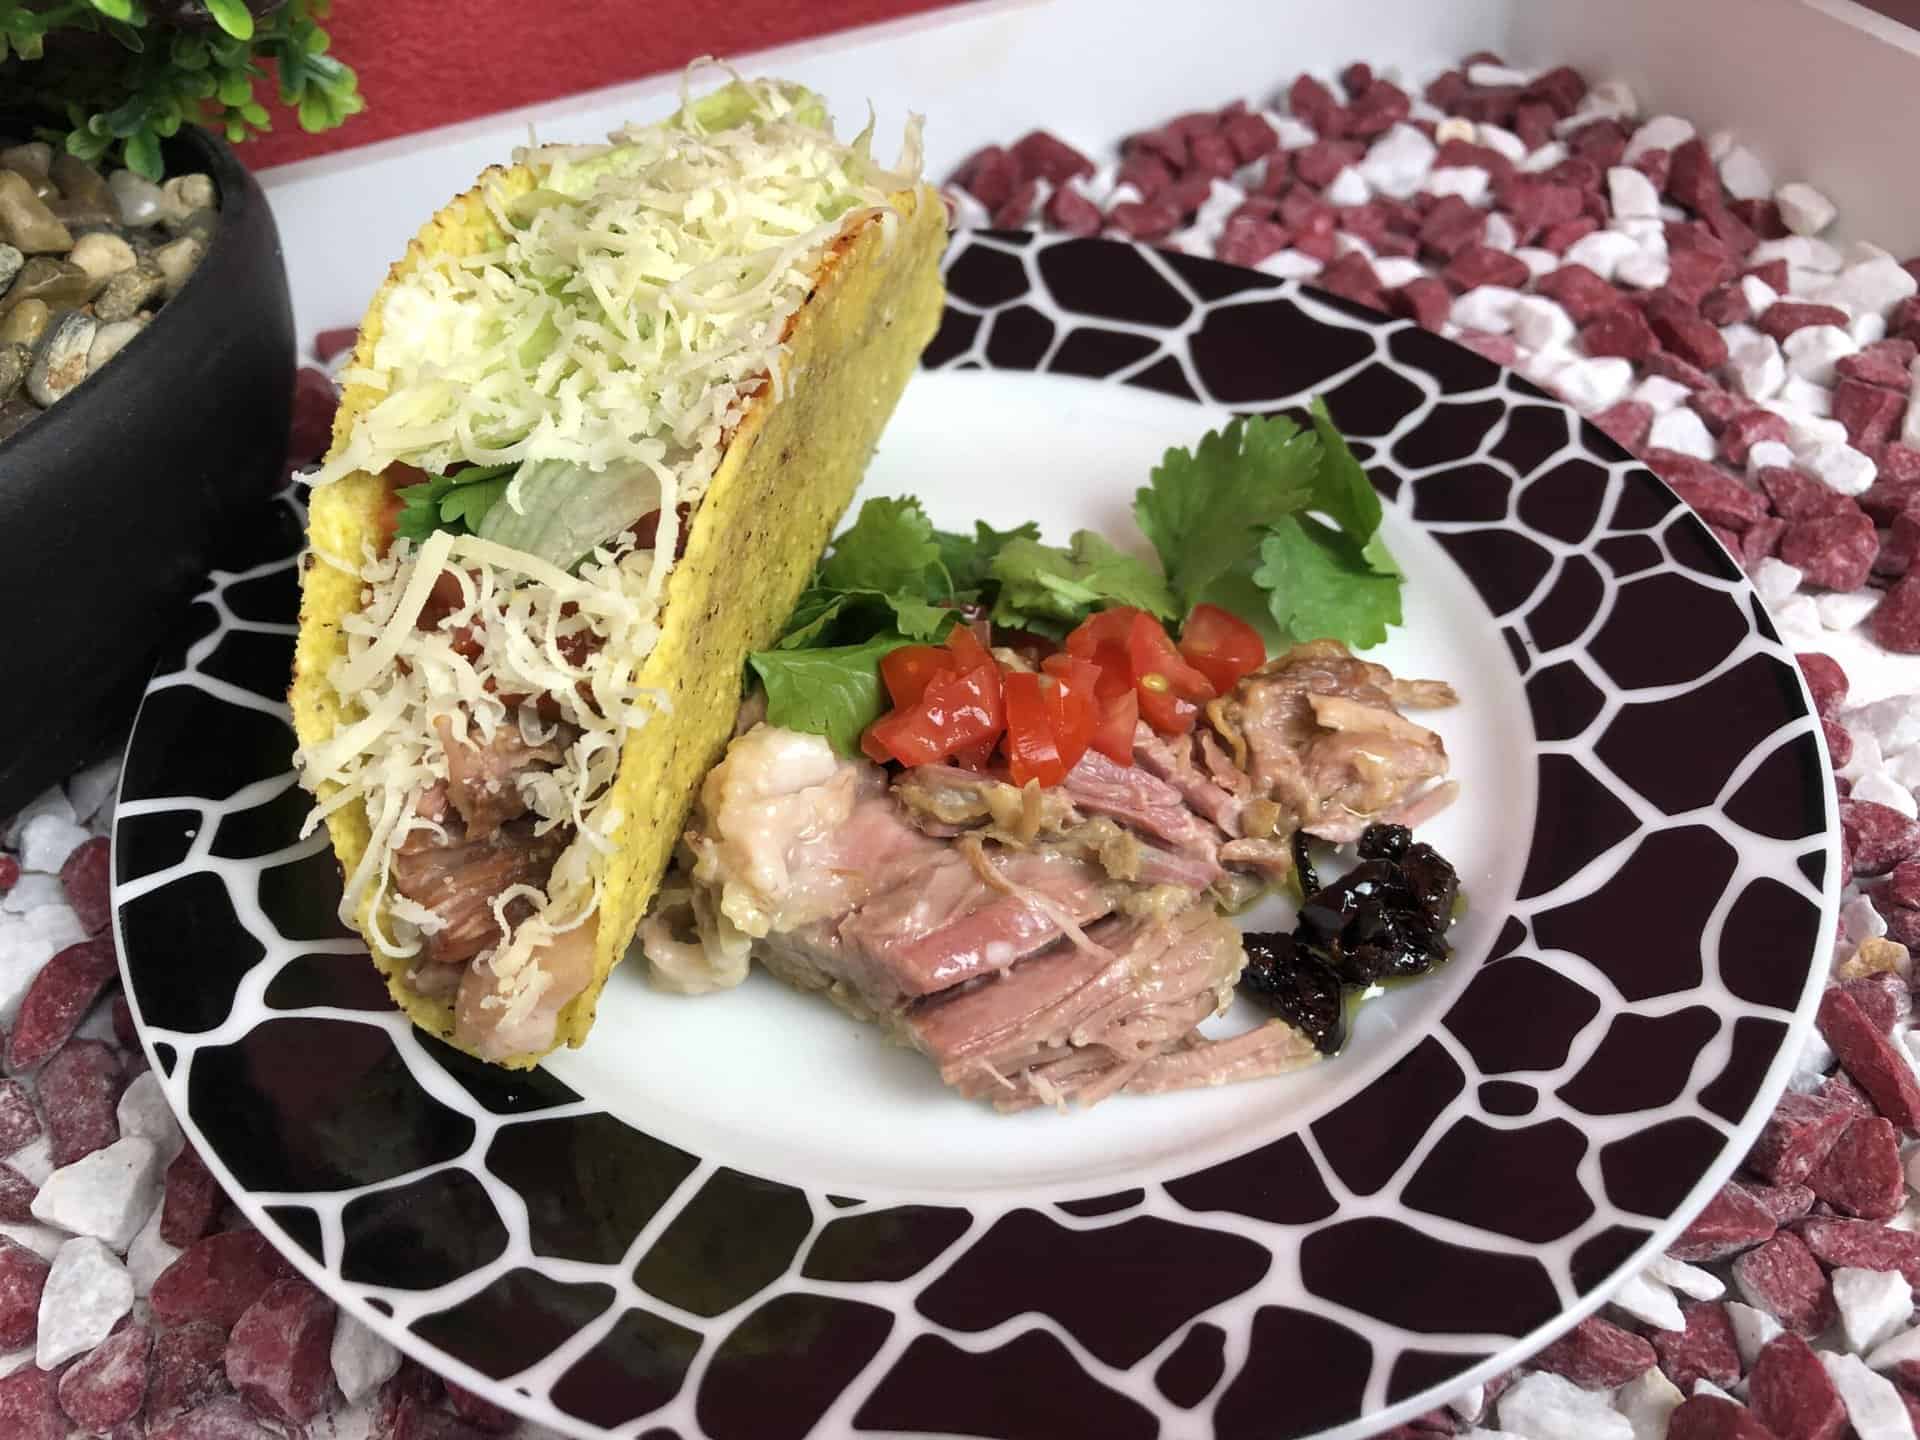 Unsere fertigen Tacos mit den Zutaten von MexicoMiAmor